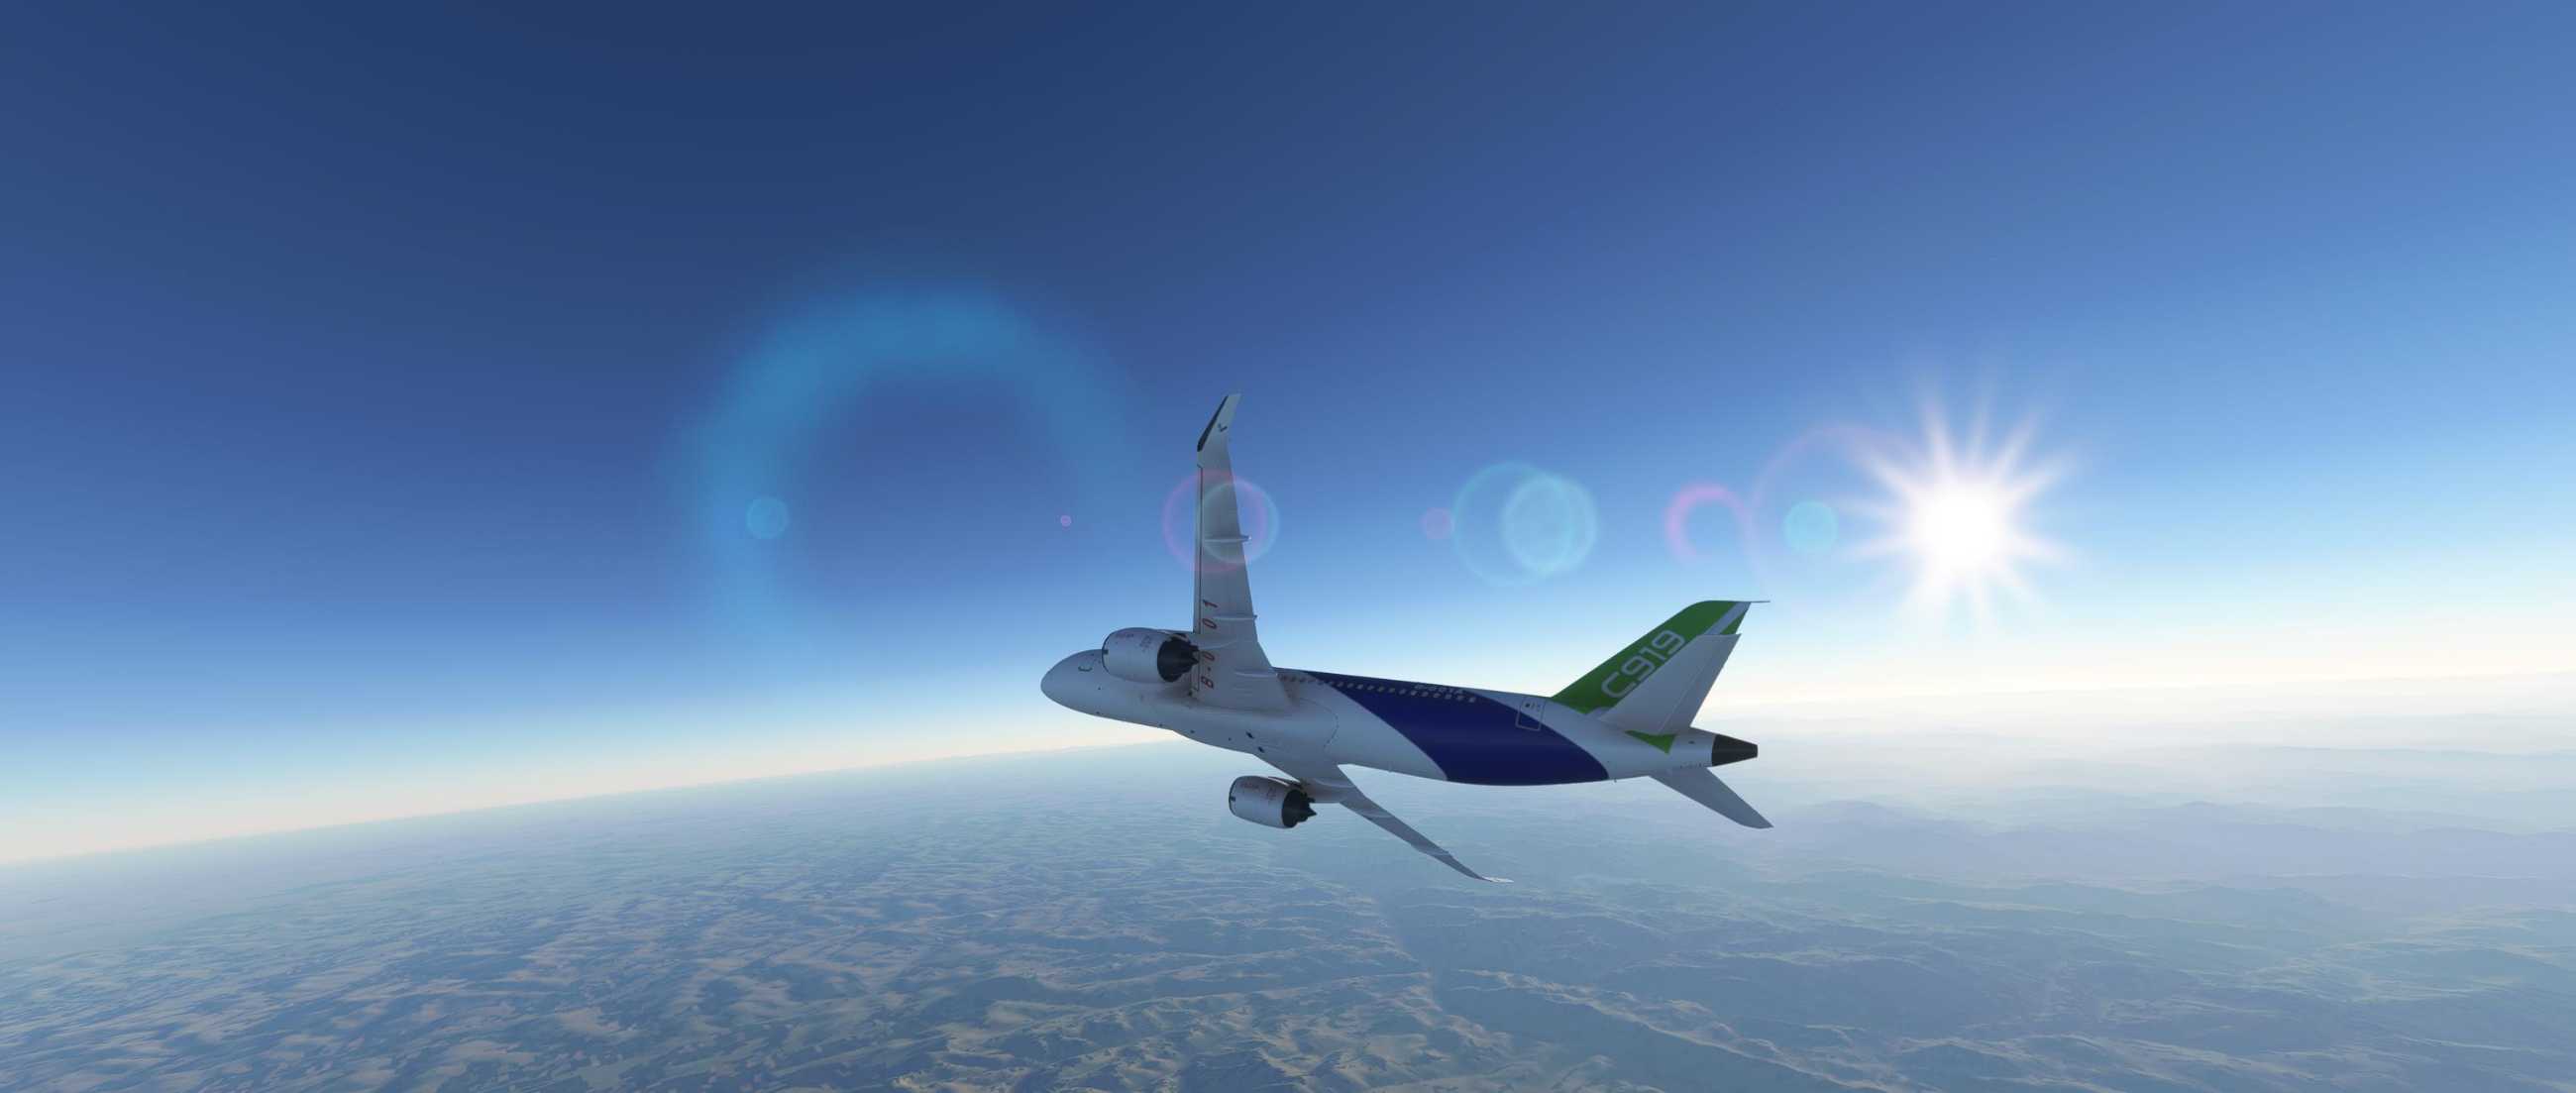 FYCYC-C919 国产大飞机机模 微软模拟飞行演示-9608 